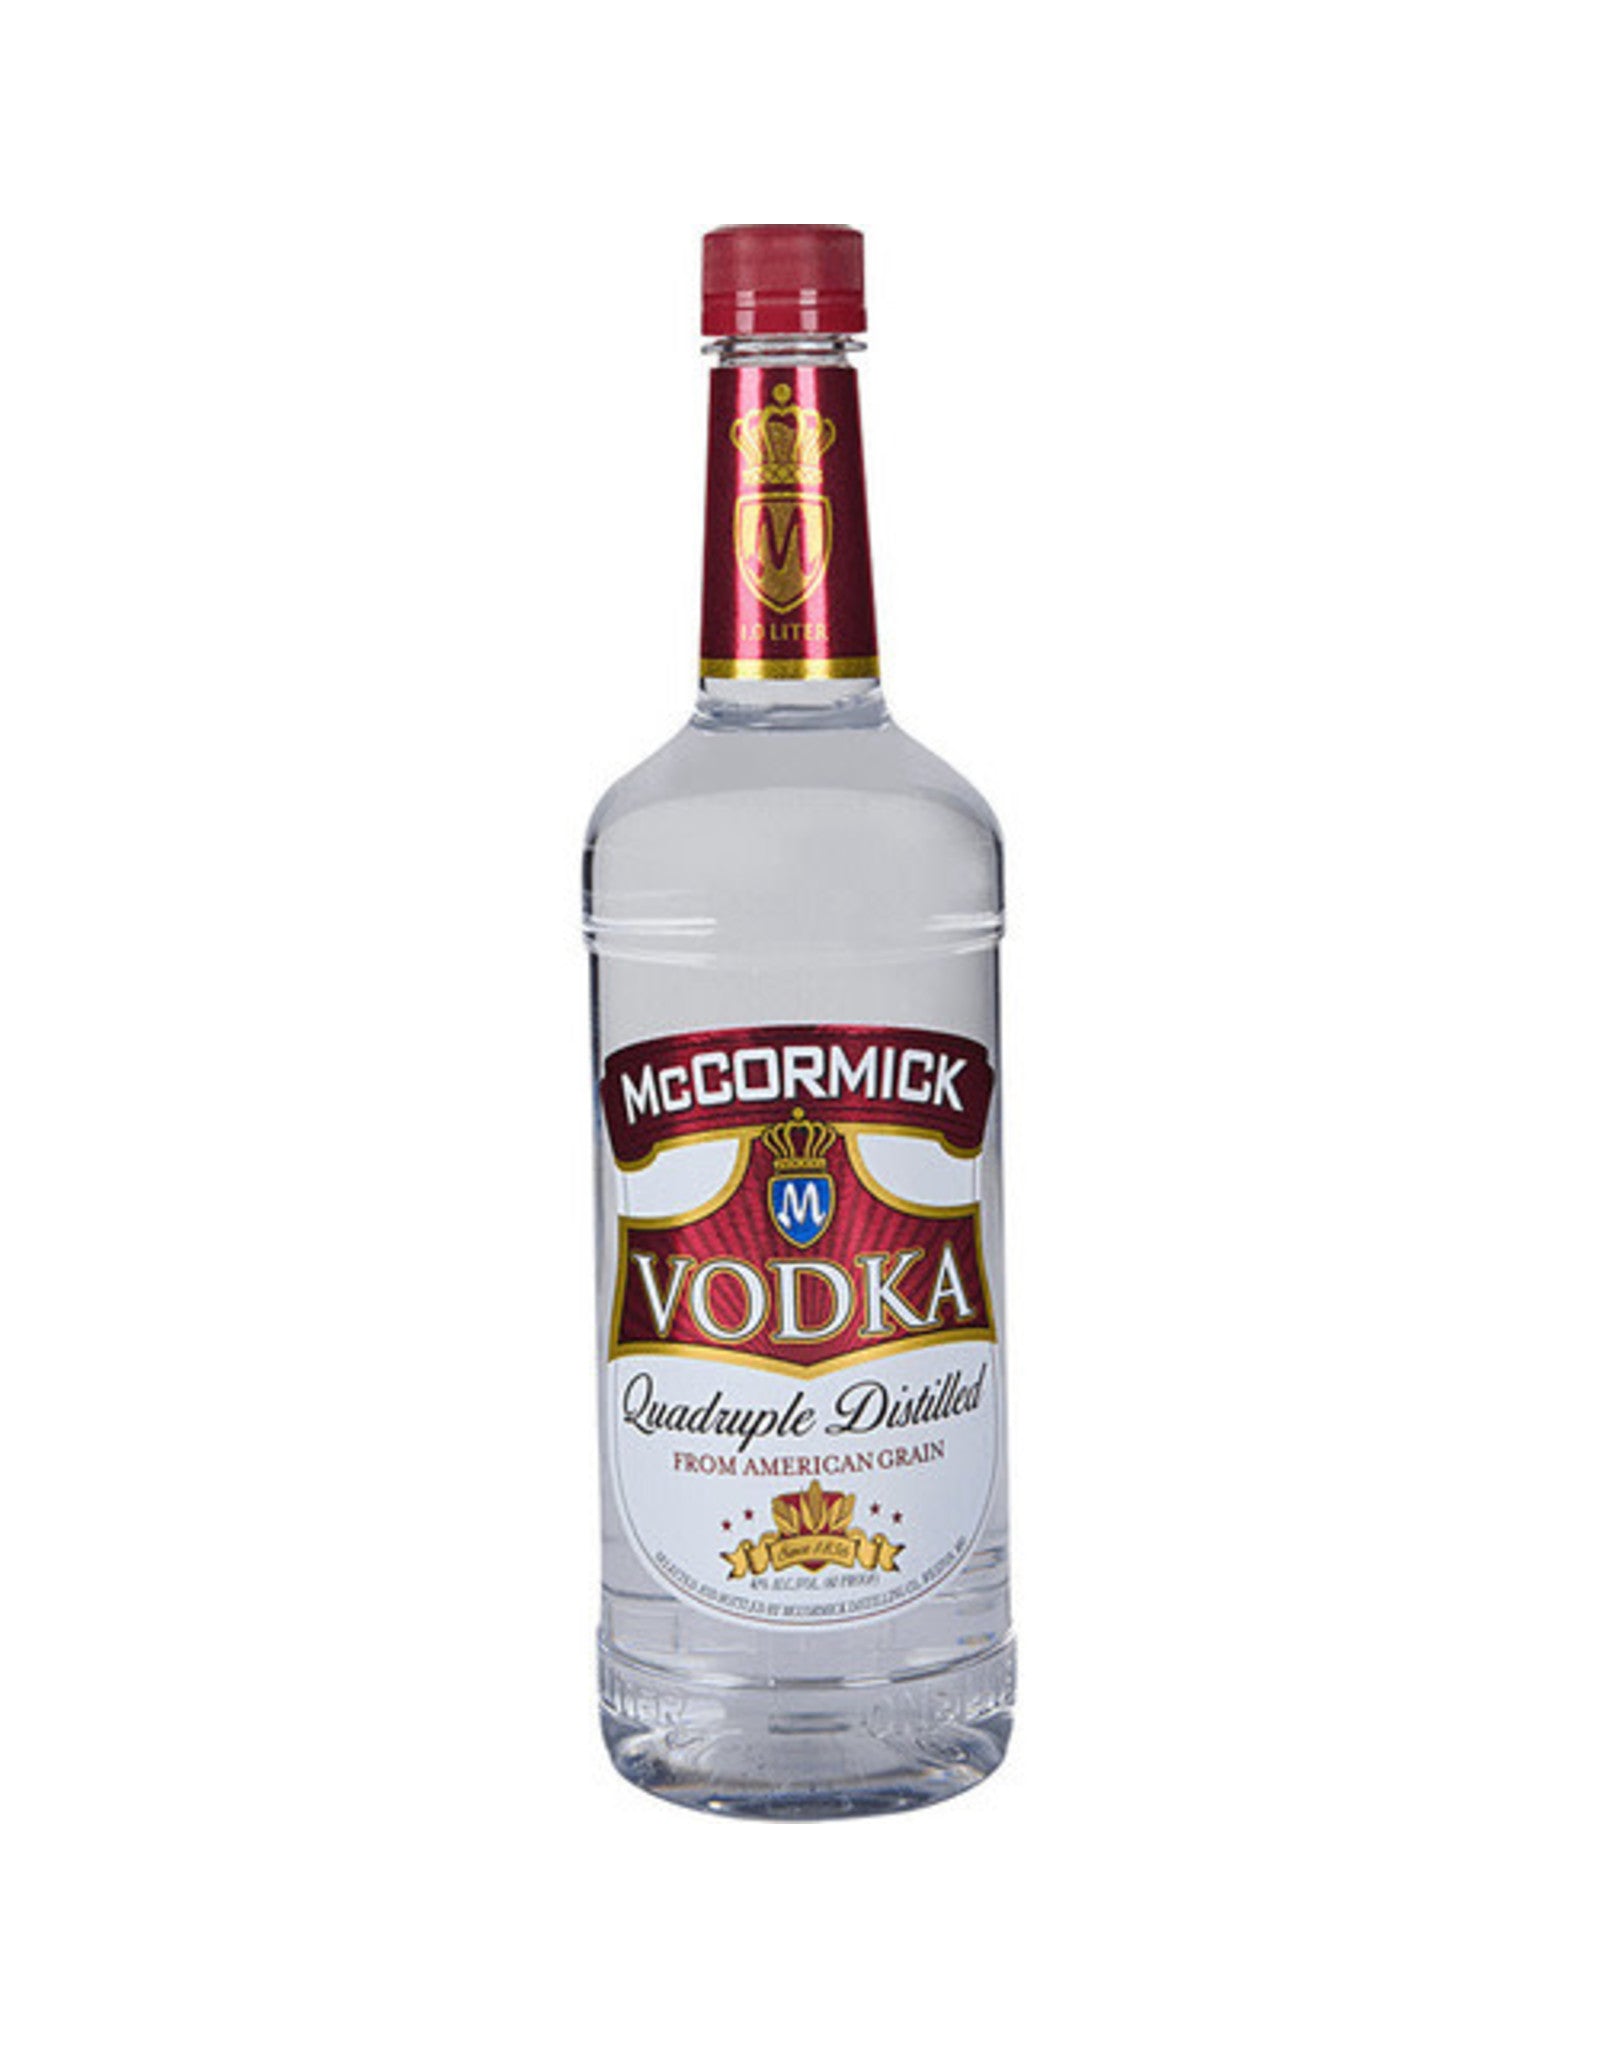 Barrica Glass Bottle for Spirits and Liquors